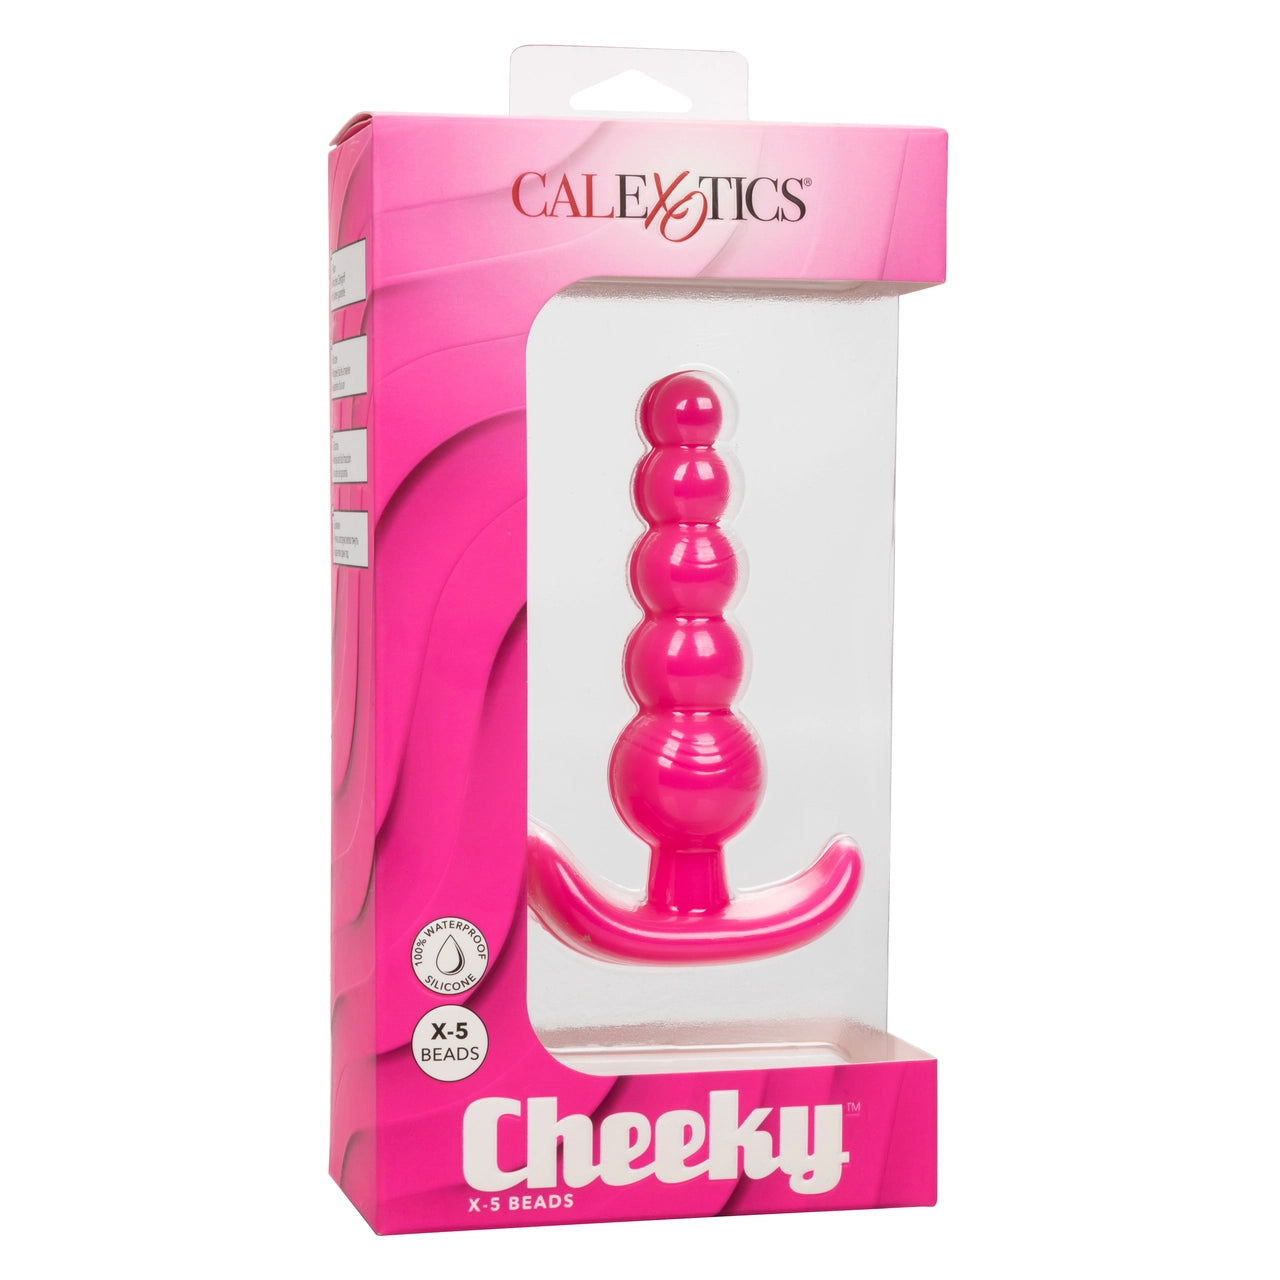 Pink cheeky plug packaging